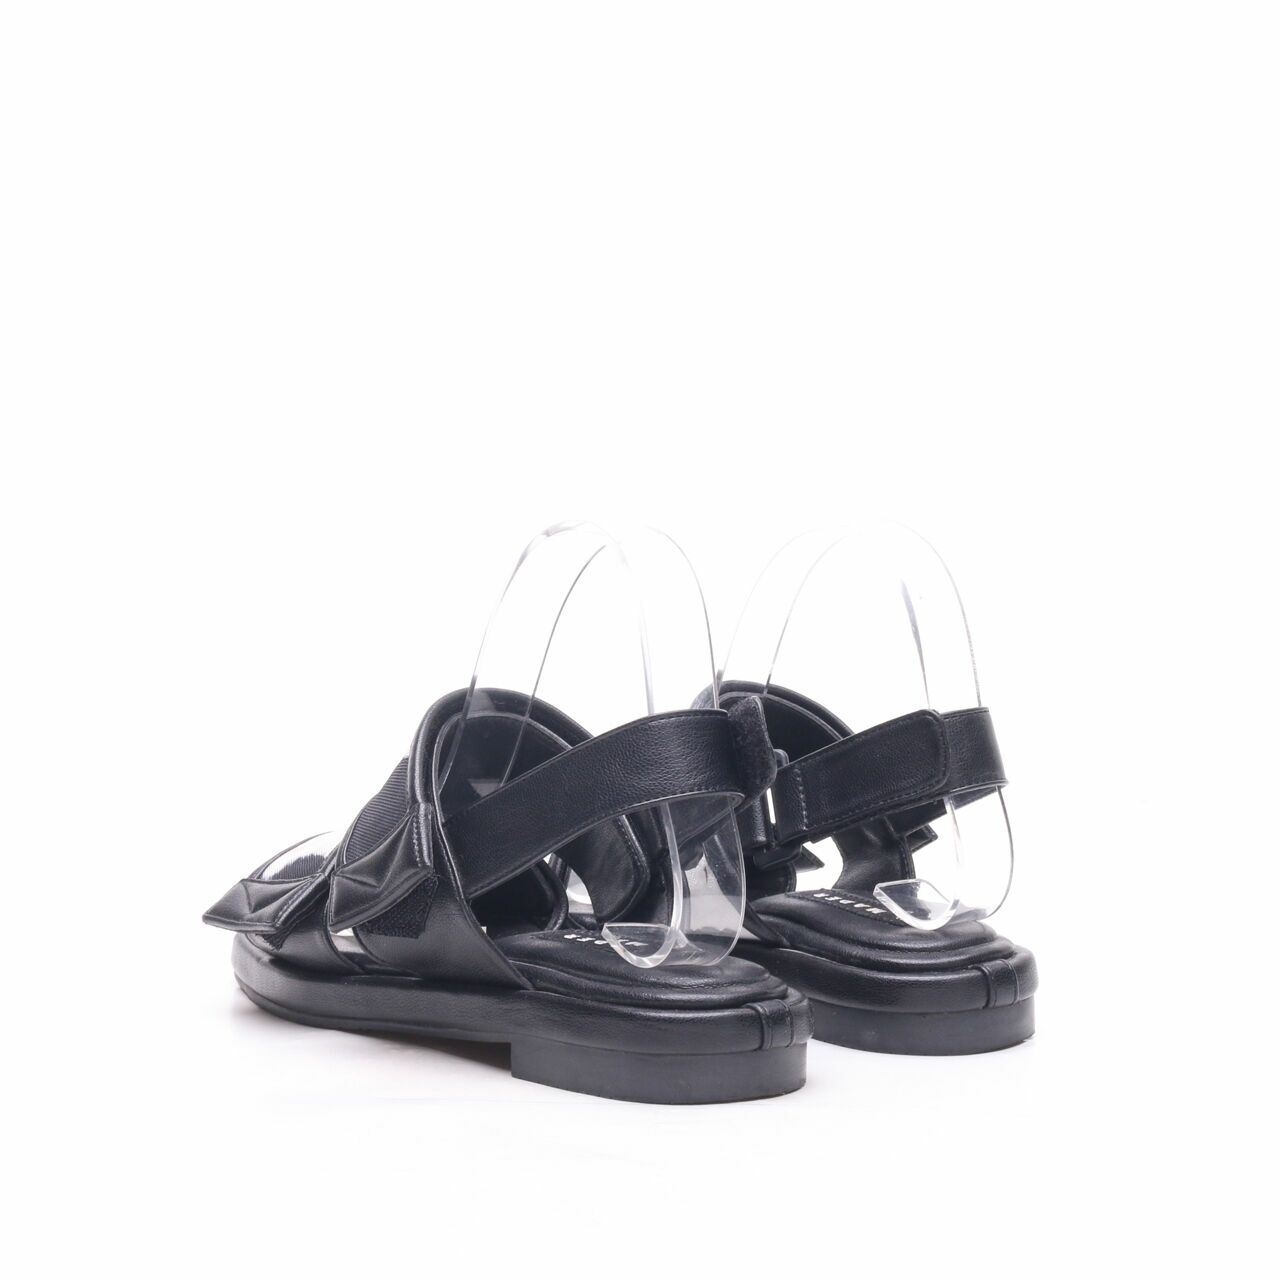 Mader Black Strap Sandals